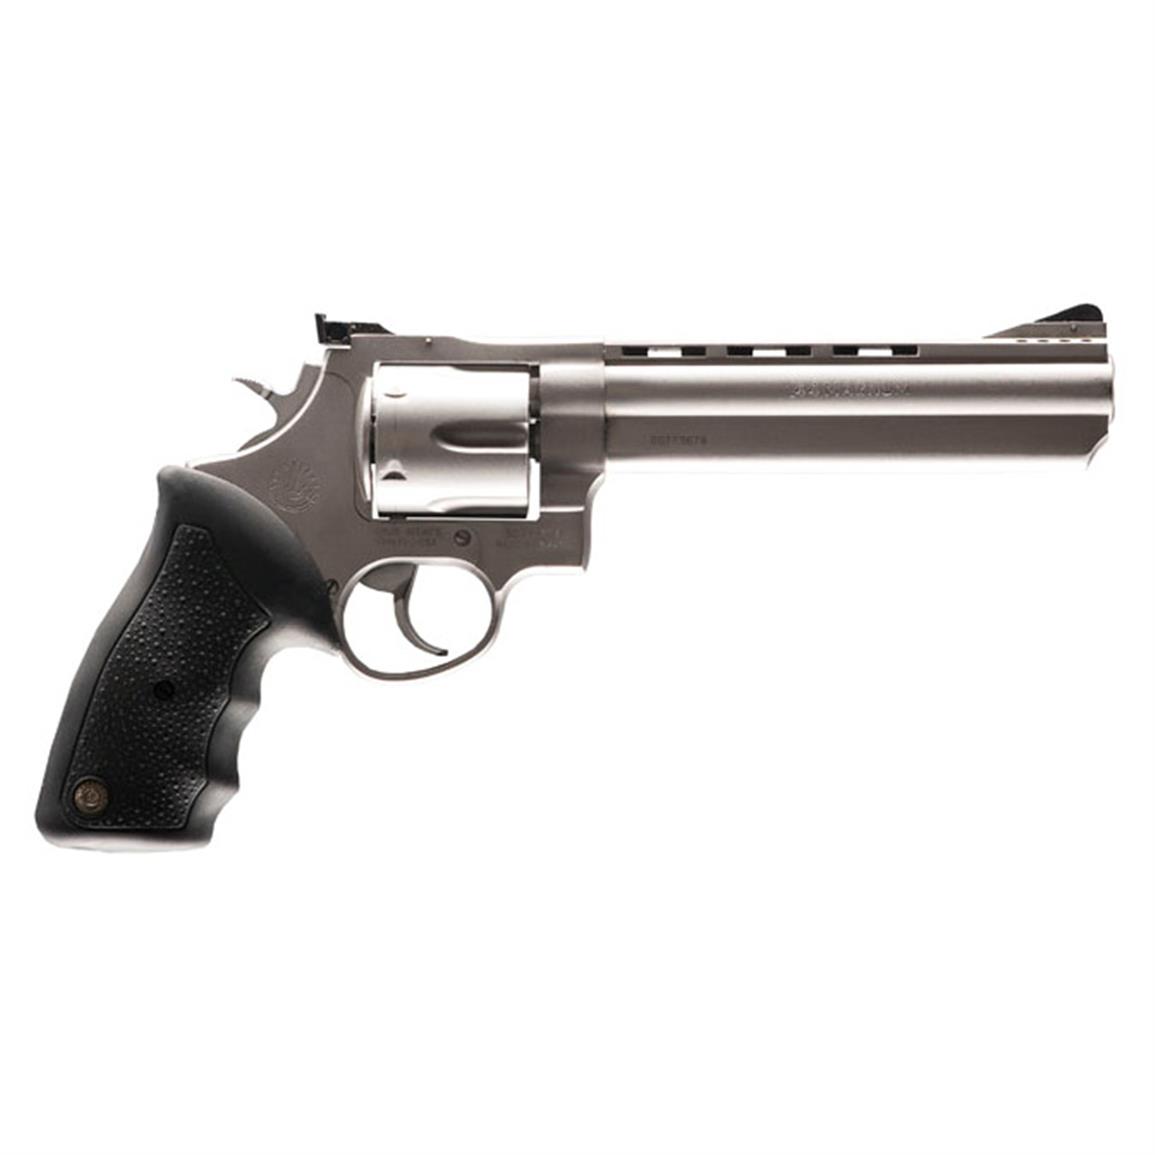 Taurus M44, Revolver, .44 Magnum, Z2440049, 151550005820, 4" Barrel